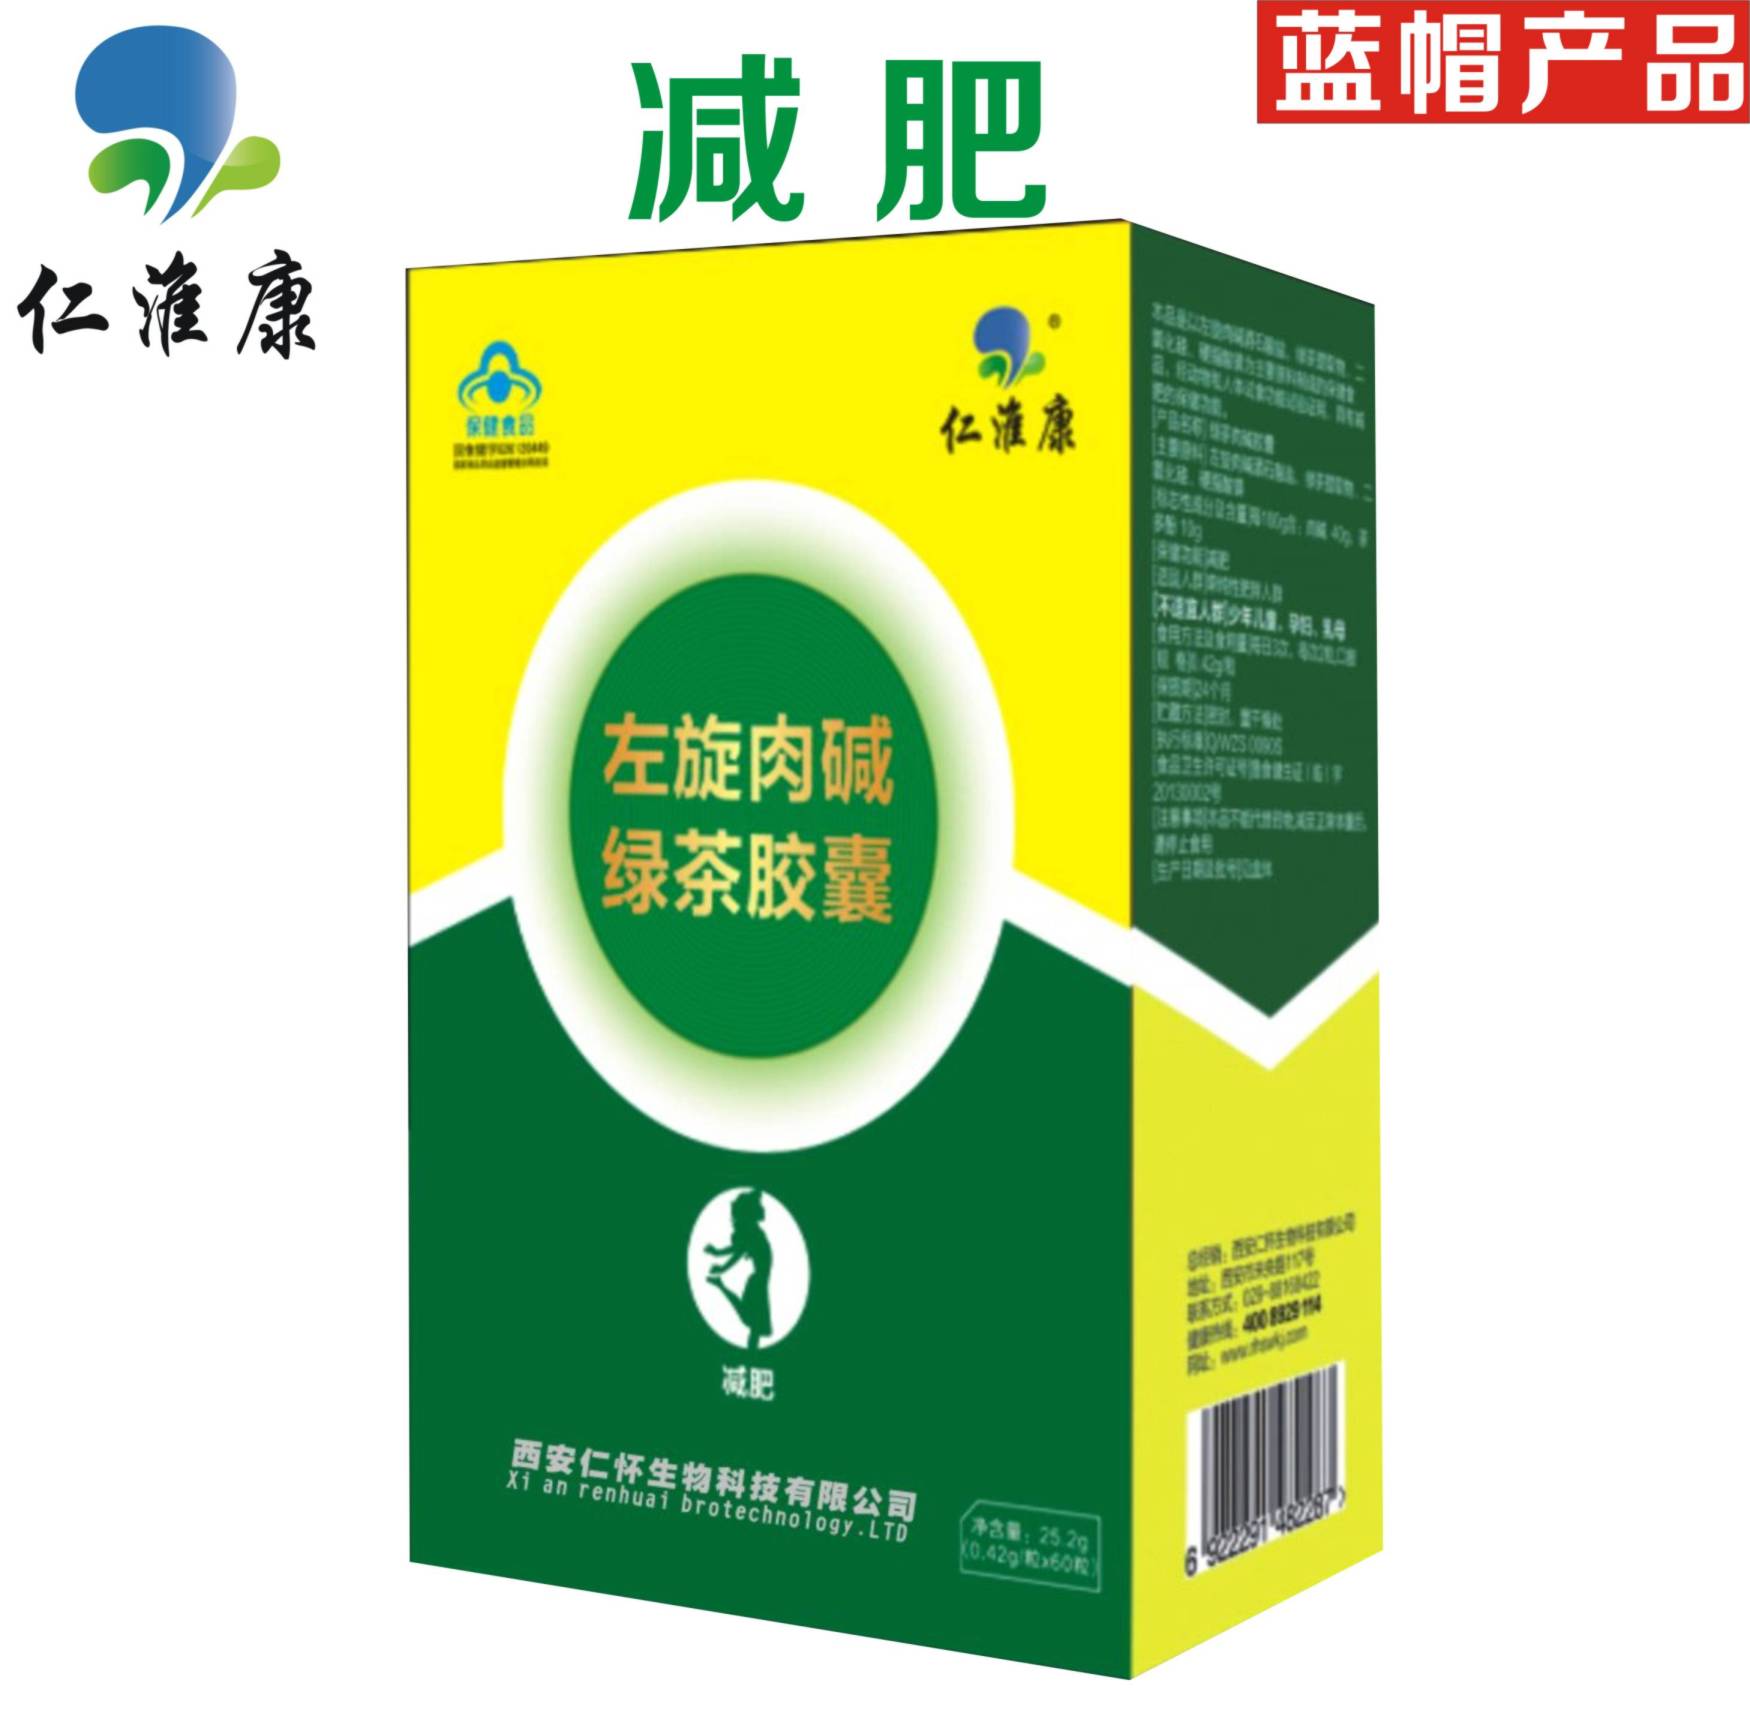 仁淮康左旋肉堿綠茶膠囊 減肥產品